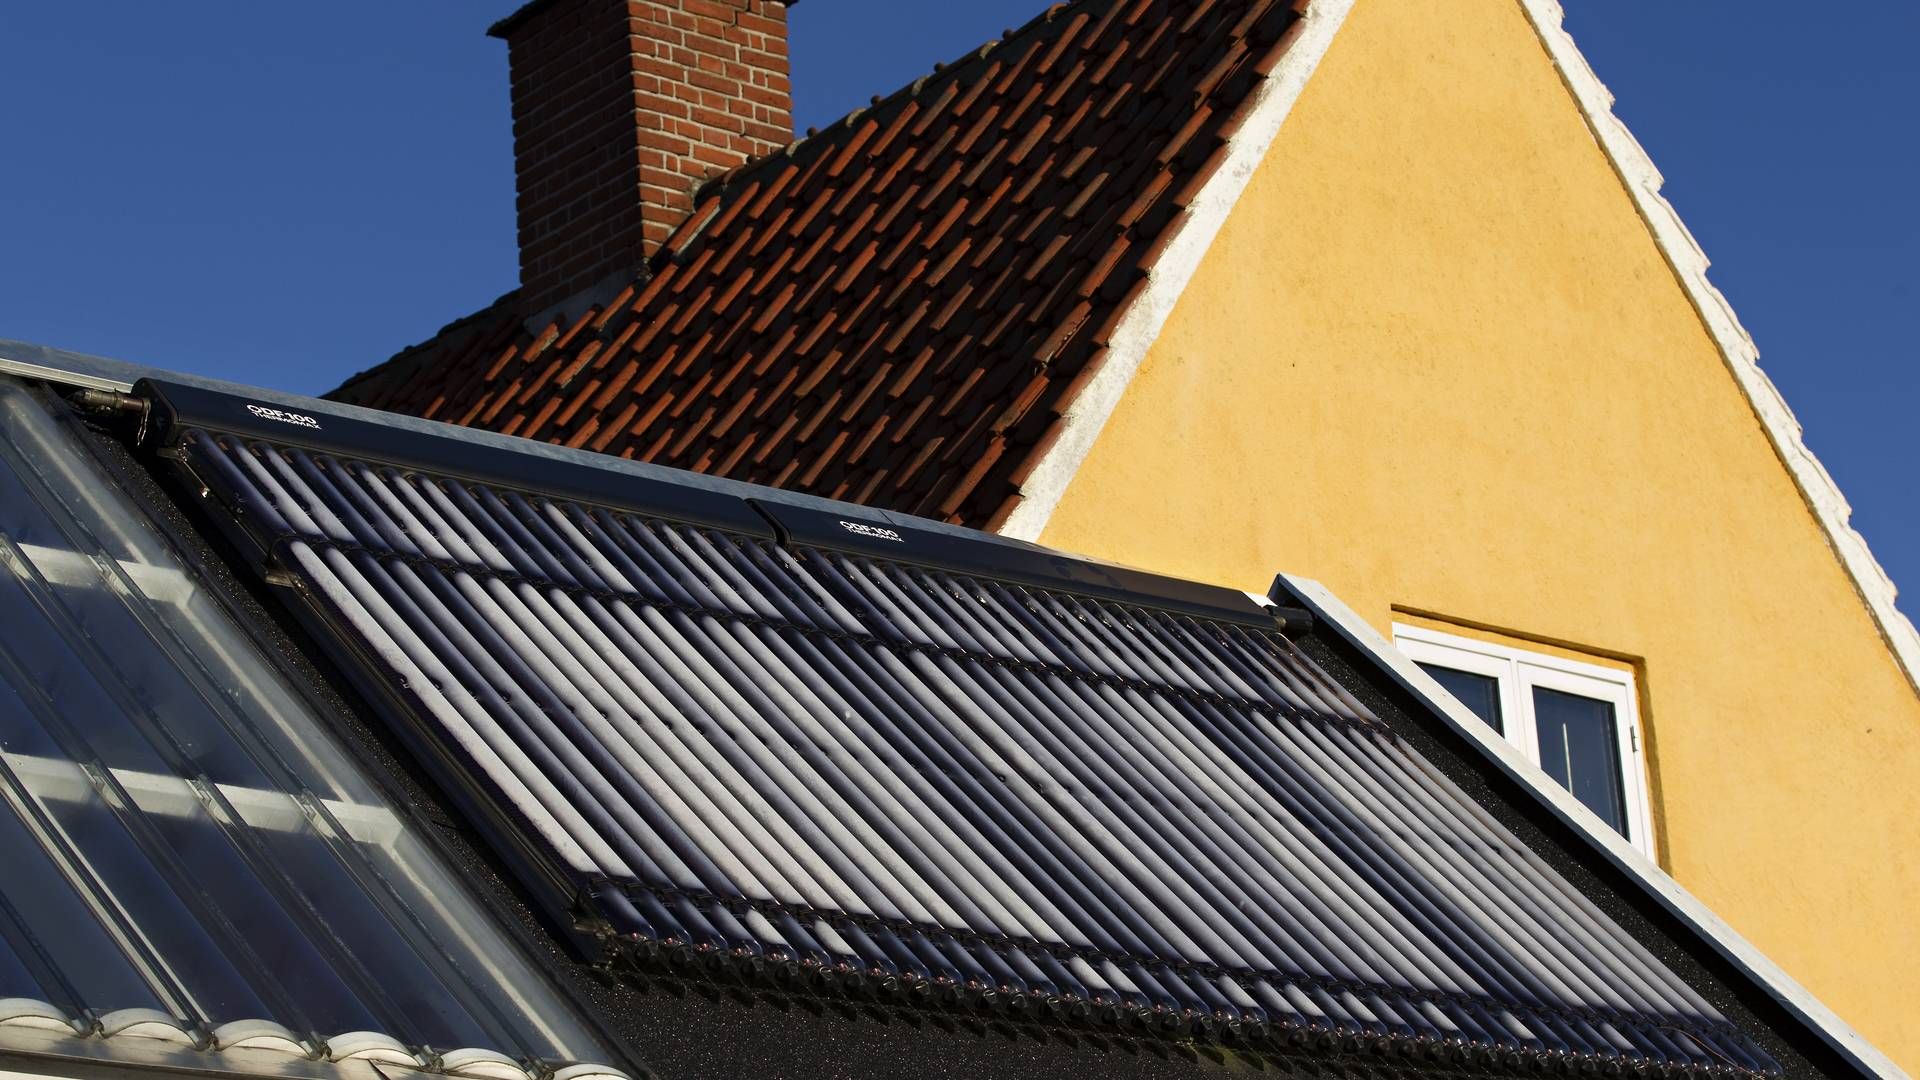 Det næste år skal detfor eksempel være meget hurtigere at få solceller på sit tag ifølge en ny nødforordning om vedvarende energiprojekter, som EU-Kommissionen har foreslået. | Photo: Jacob Ehrbahn